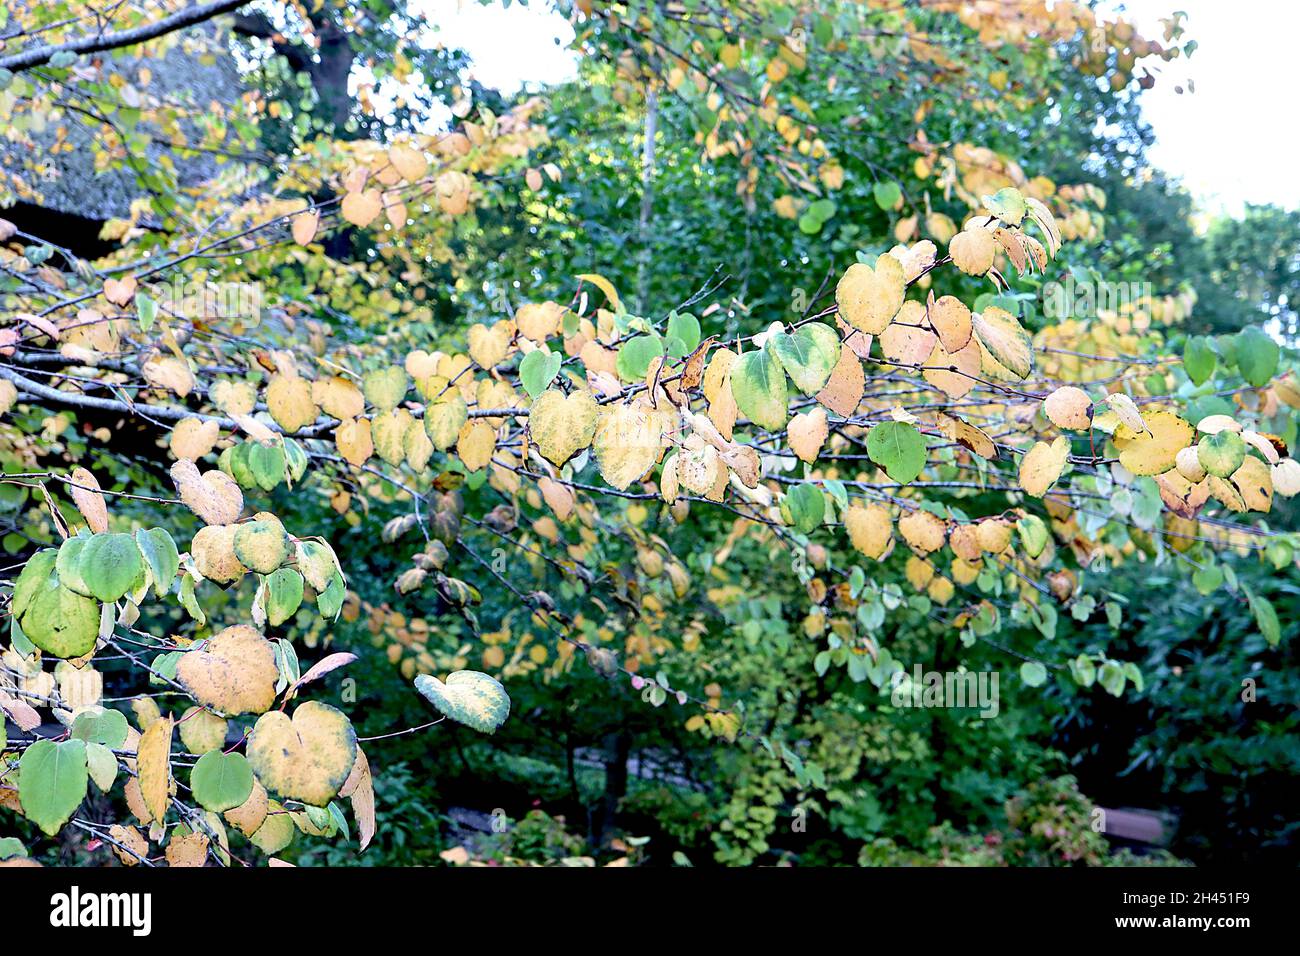 Cercidiphyllum japonicum katsura Baum – gelbe und mittelgrüne Blätter mit verbranntem Zuckerduft, Oktober, England, Großbritannien Stockfoto